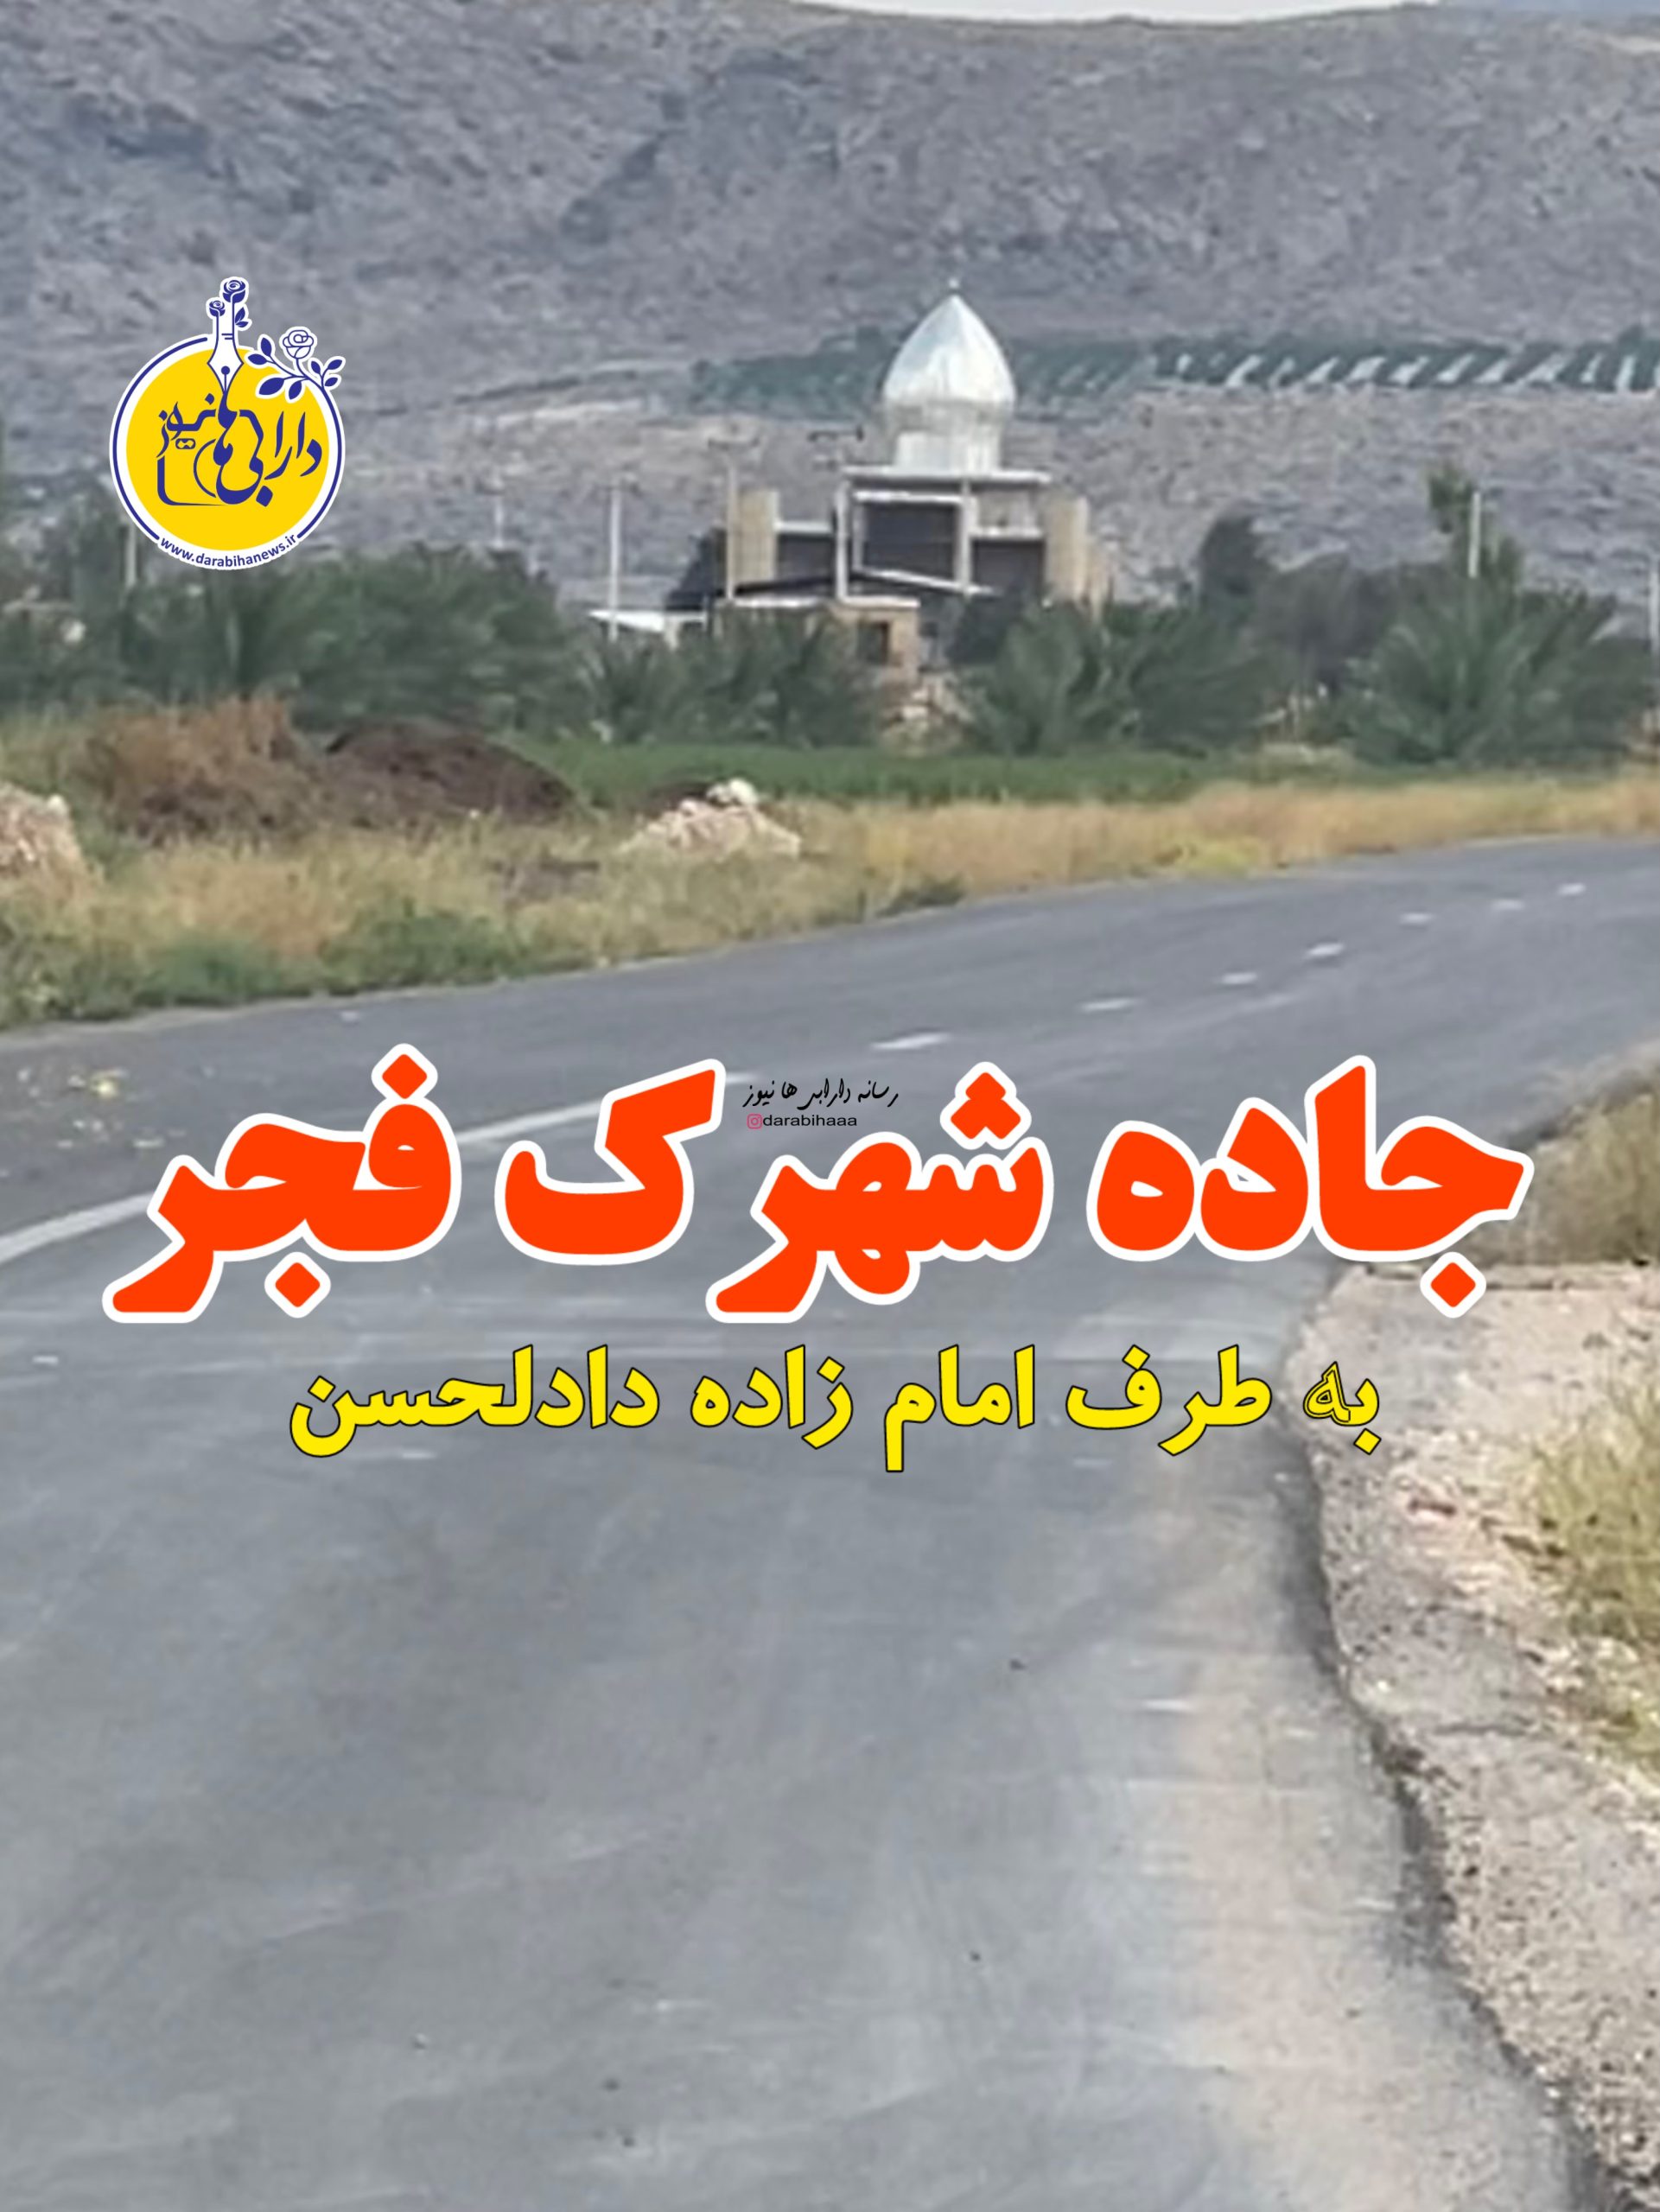 جاده شهرک فجر به طرف امامزاده دادالحسن